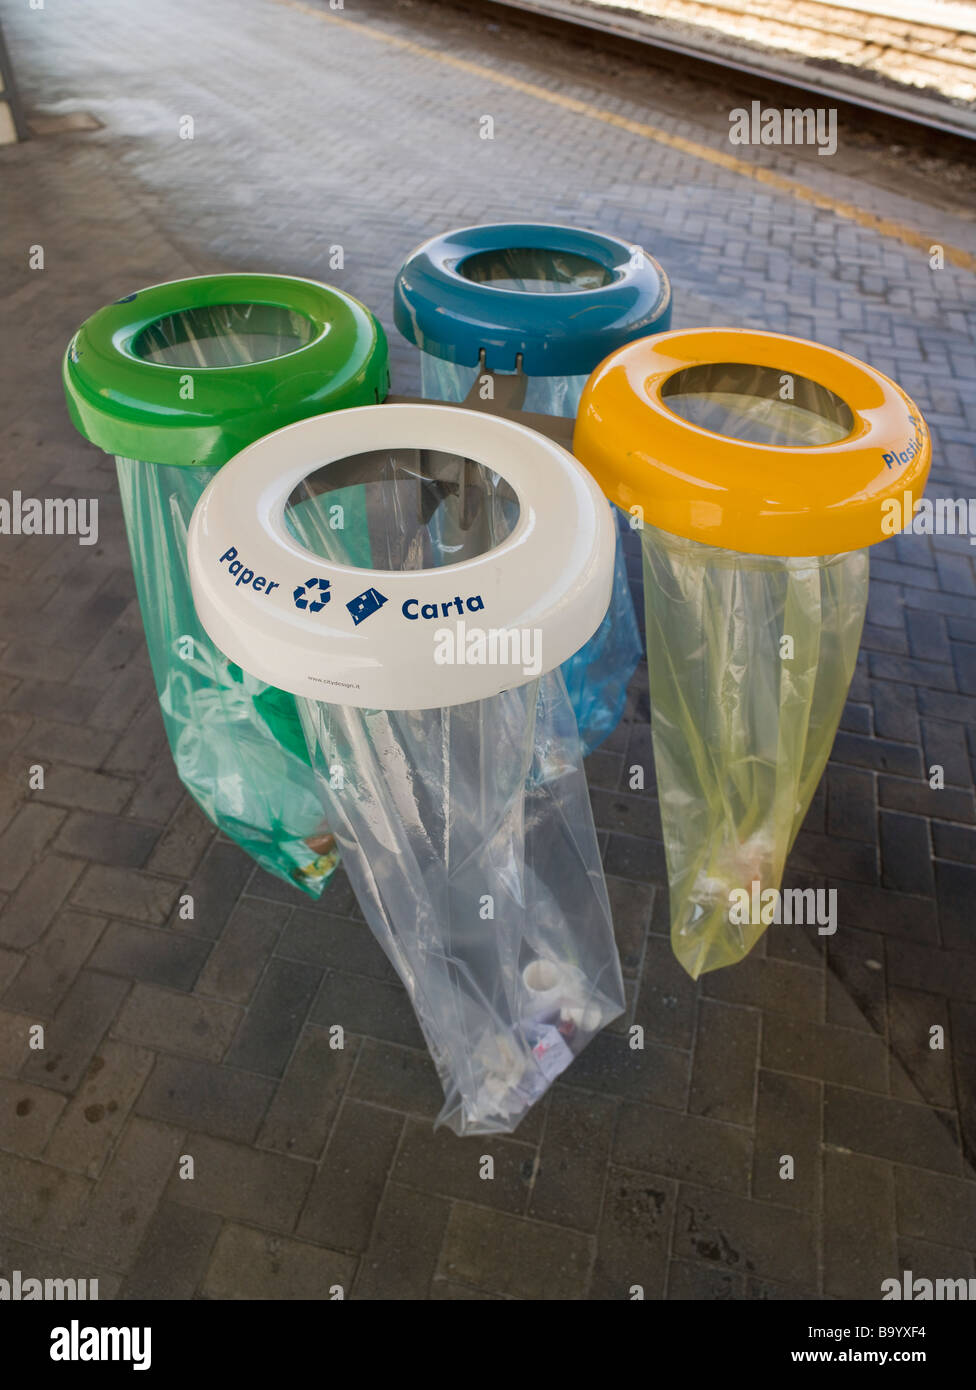 Codificado por color bolsas de reciclaje de la estación Bologna Italia blanco para el papel amarillo para plástico de aluminio azul verde para desechos generales Foto de stock